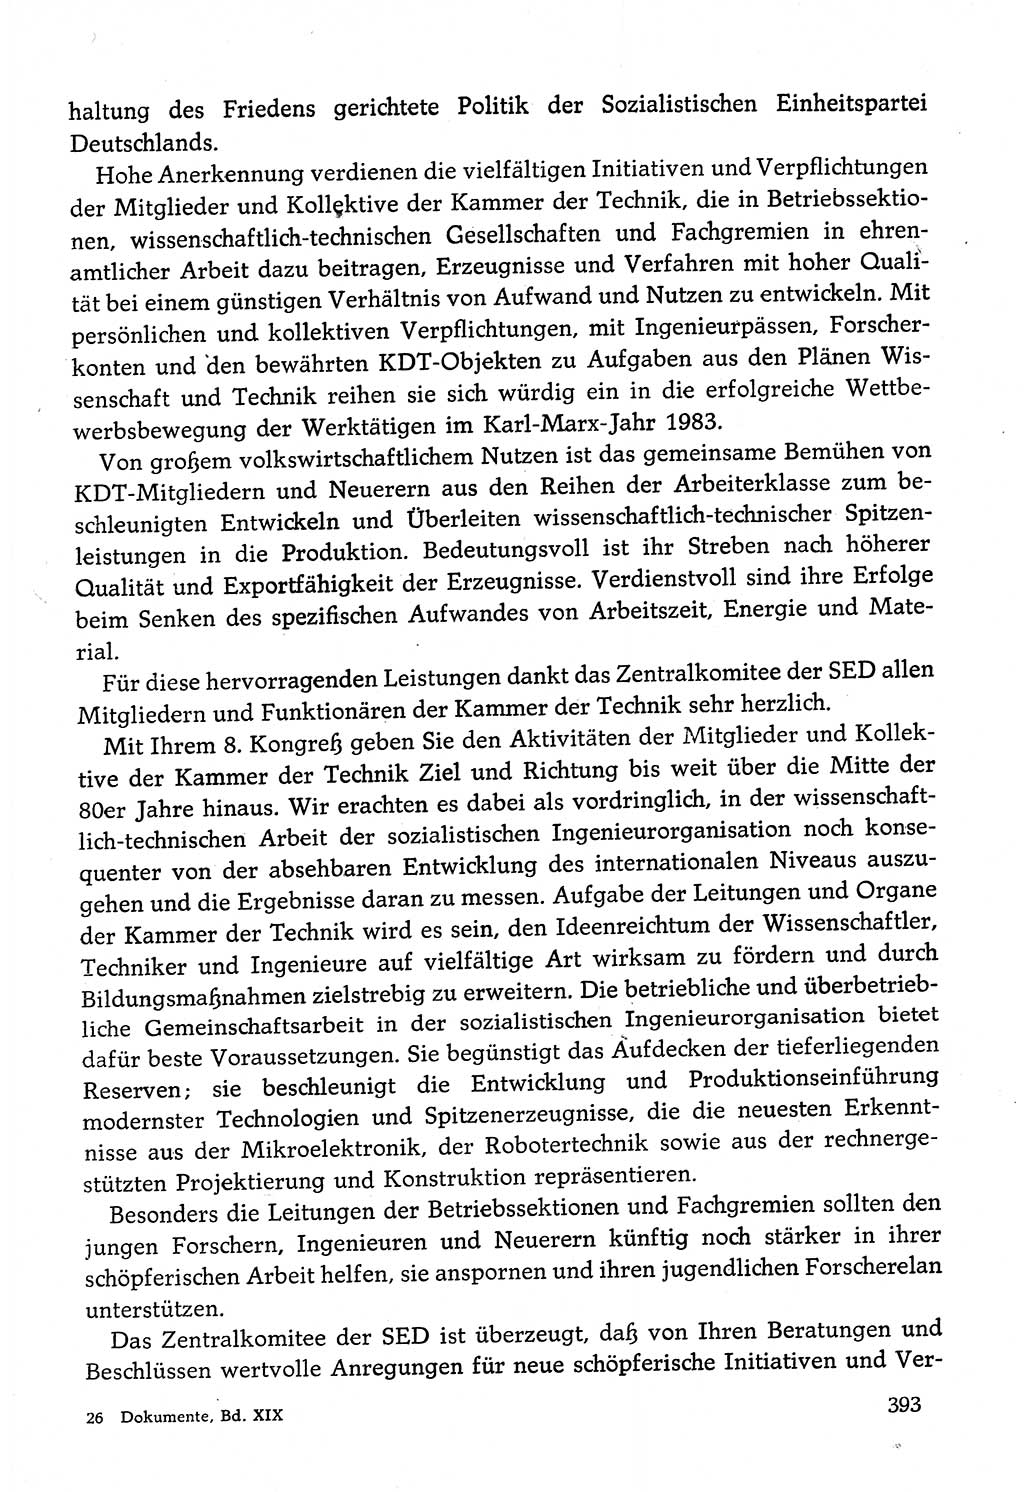 Dokumente der Sozialistischen Einheitspartei Deutschlands (SED) [Deutsche Demokratische Republik (DDR)] 1982-1983, Seite 393 (Dok. SED DDR 1982-1983, S. 393)